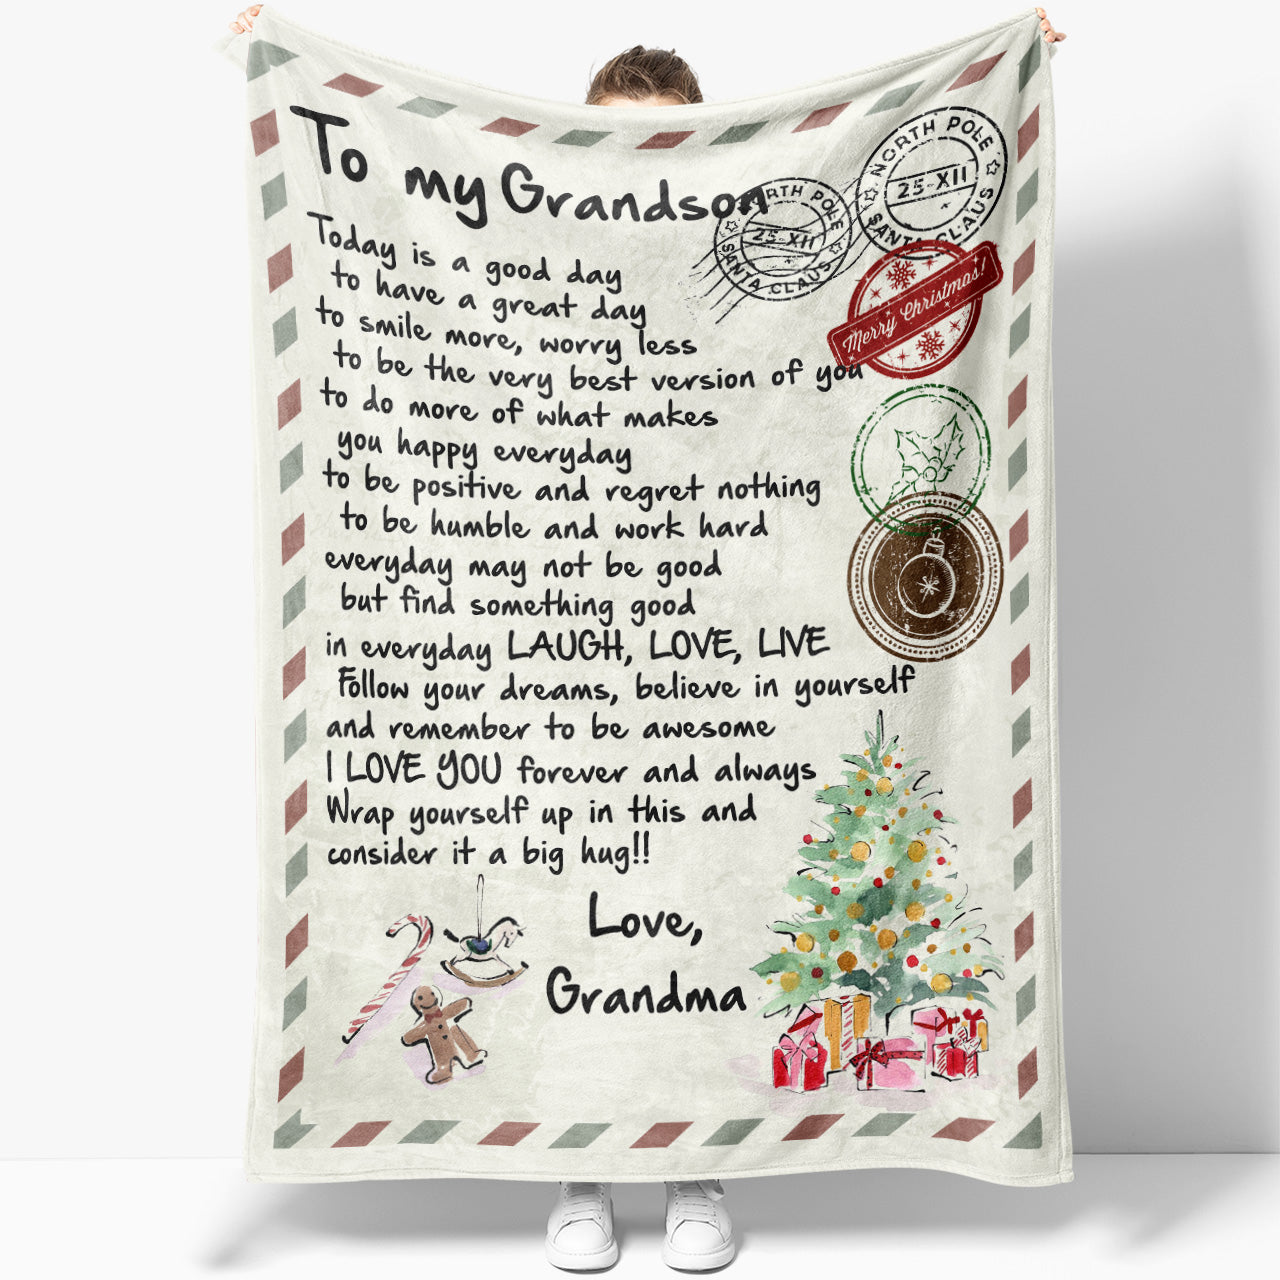 Blanket Christmas Gift For Grandson, Keepsake Gifts For Grandsons, Letter to Amazing